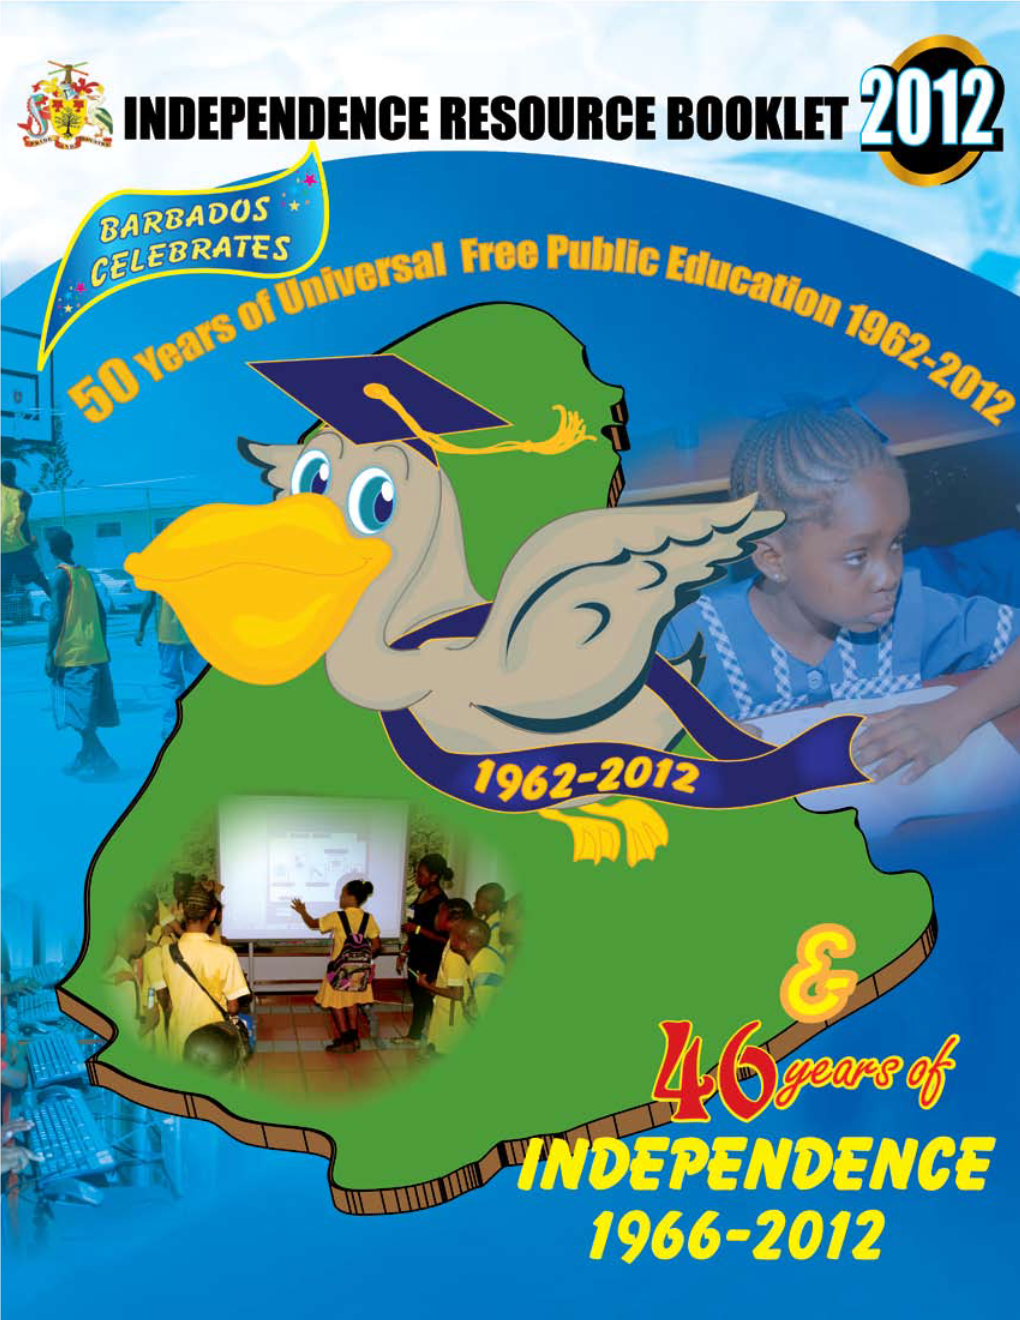 Resourcebooklet2012.Pdf